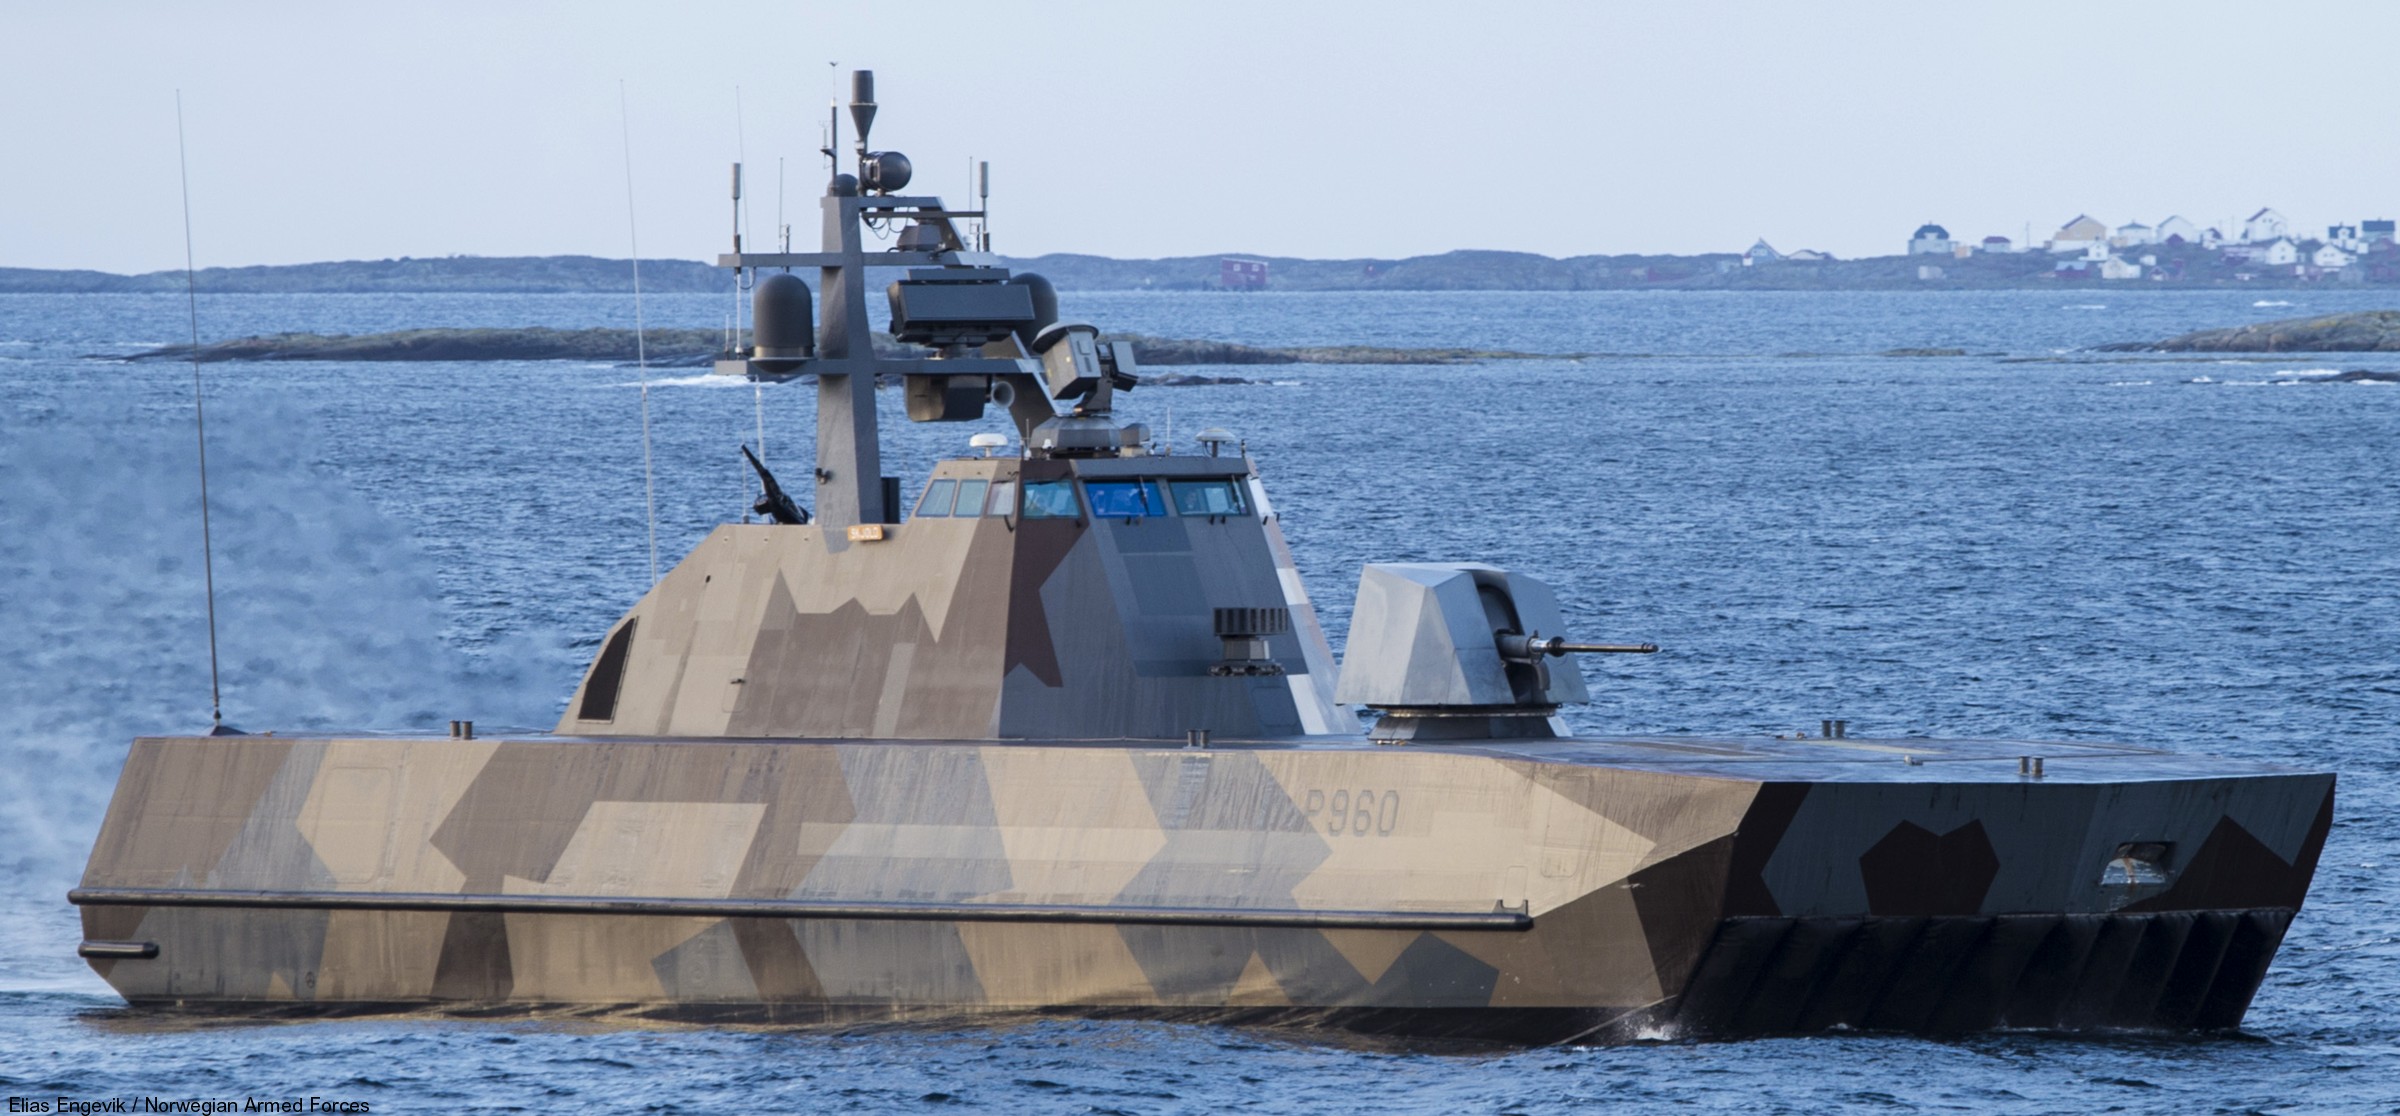 p-960 skjold hnoms knm corvette royal norwegian navy sjoforsvaret 16